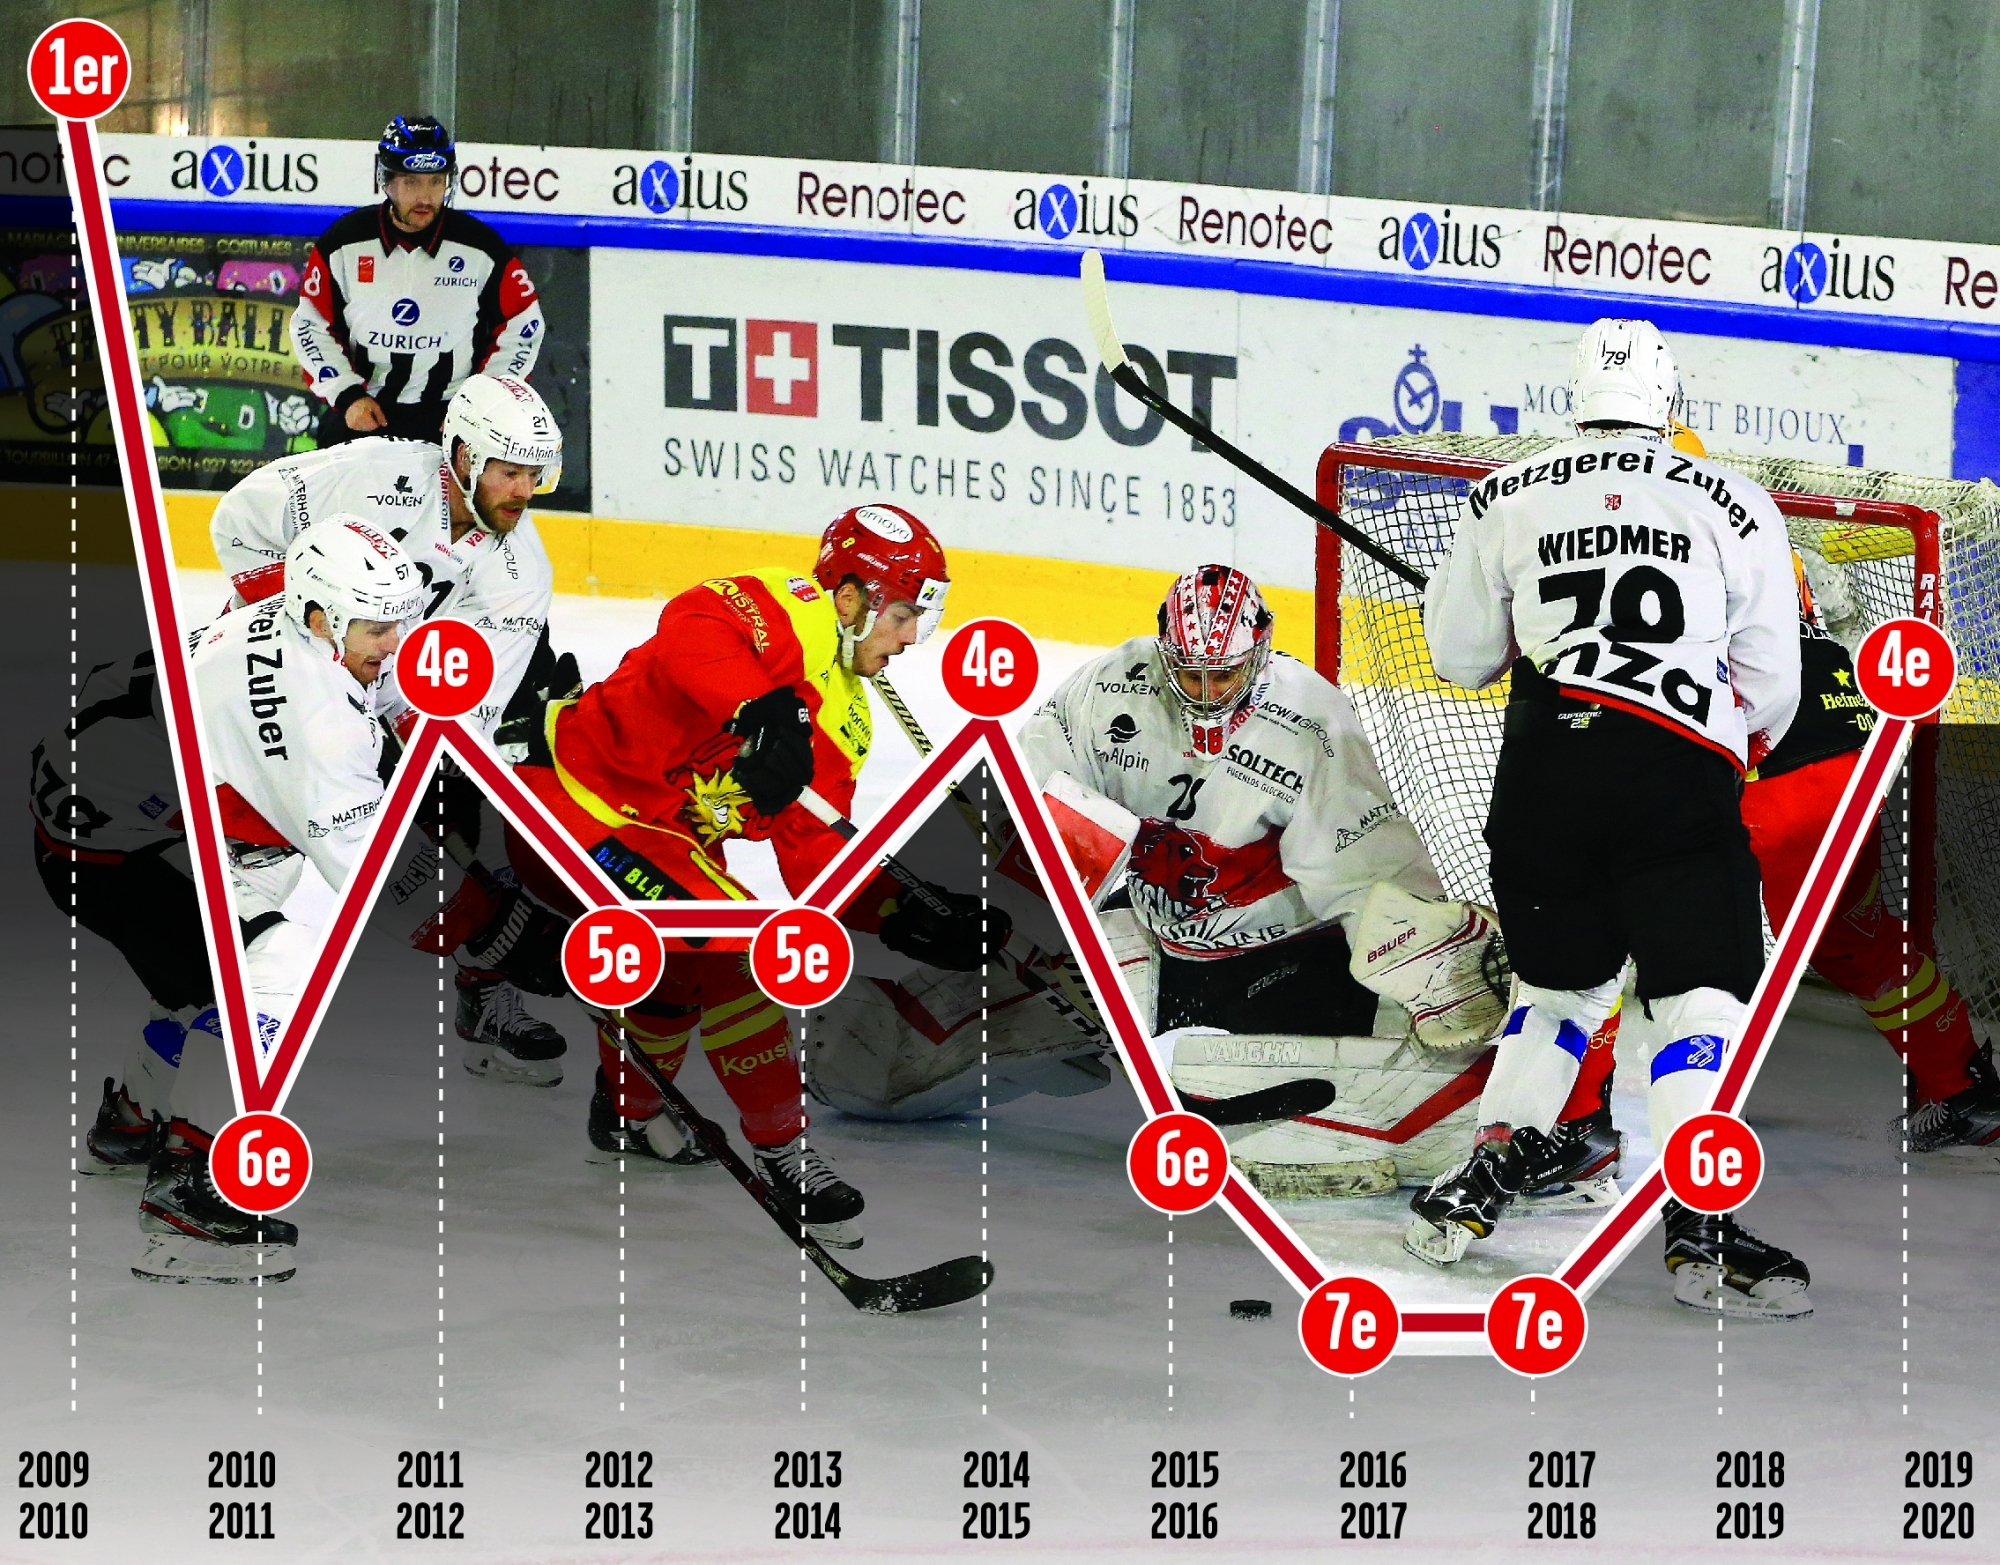 Les Haut-Valaisans avaient aussi terminé quatrièmes lors des exercices 2011/12 et 2014/15. A la différence que le deuxième échelon du hockey suisse comptait moins d'équipes ces années-là.